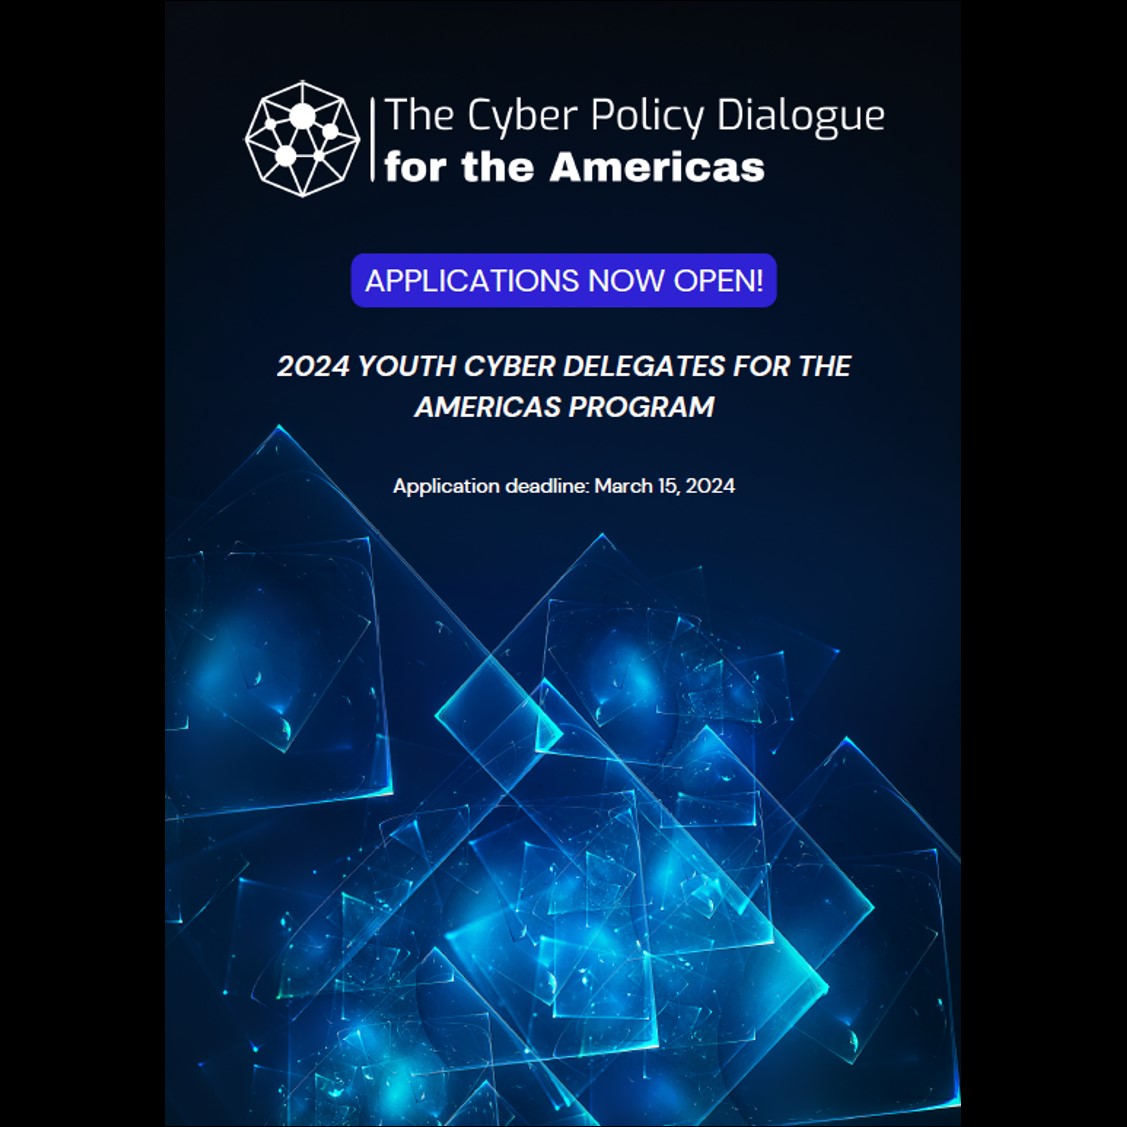 Participa en el programa Cyber Policy Dialogue for the Americas